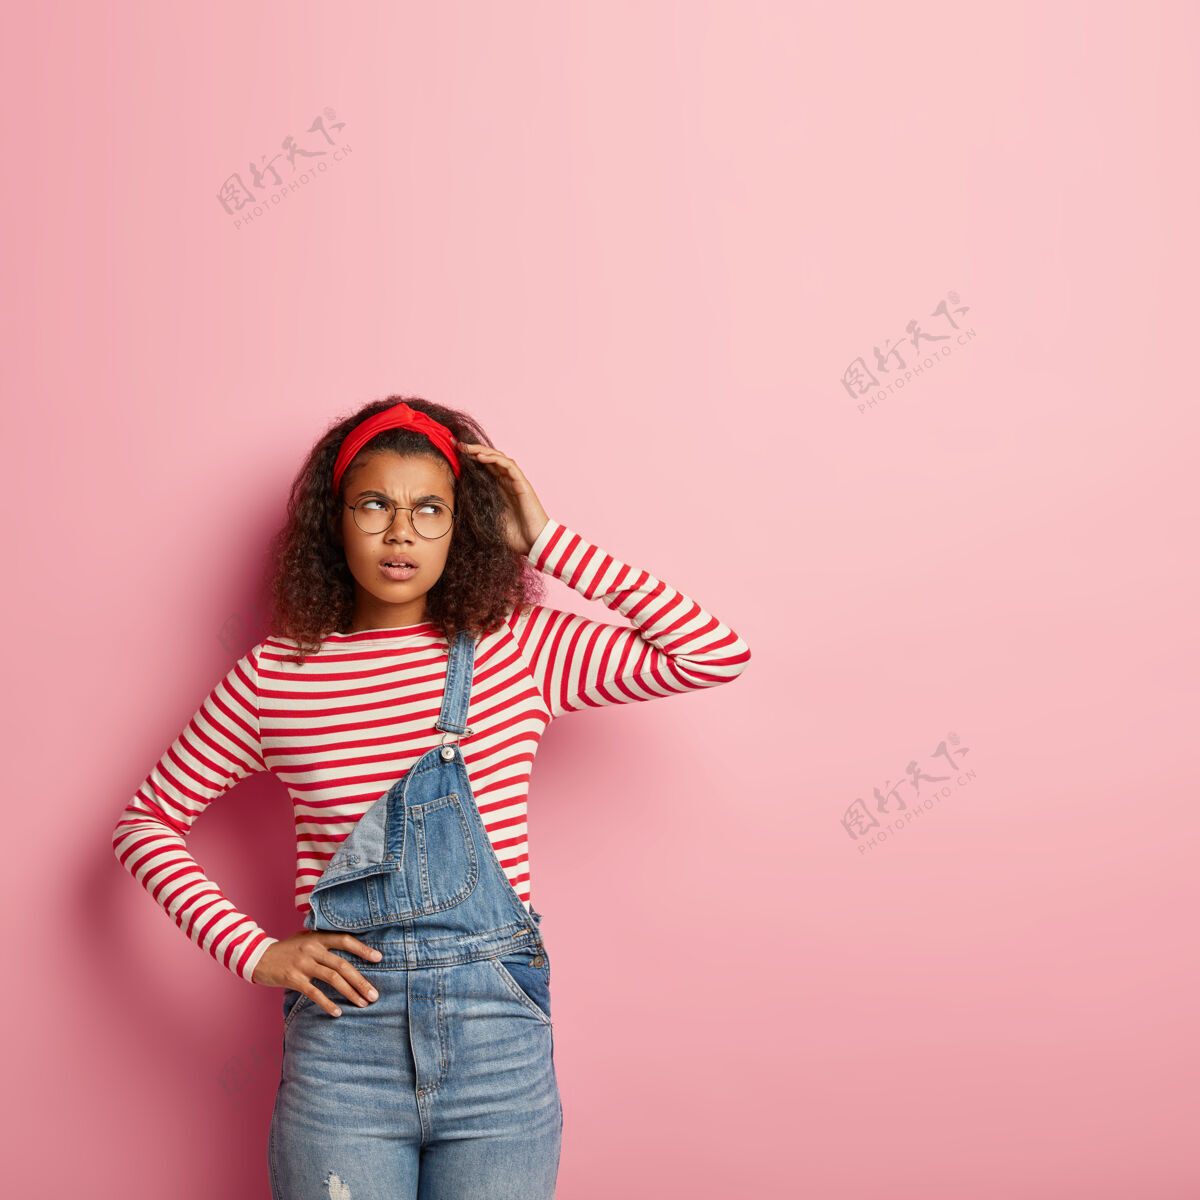 垂直照片中 一位体贴 愤怒的非裔美国妇女 表情忧郁 搔着头 头上戴着红色头带 条纹套头衫和牛仔工作服思想女士年轻